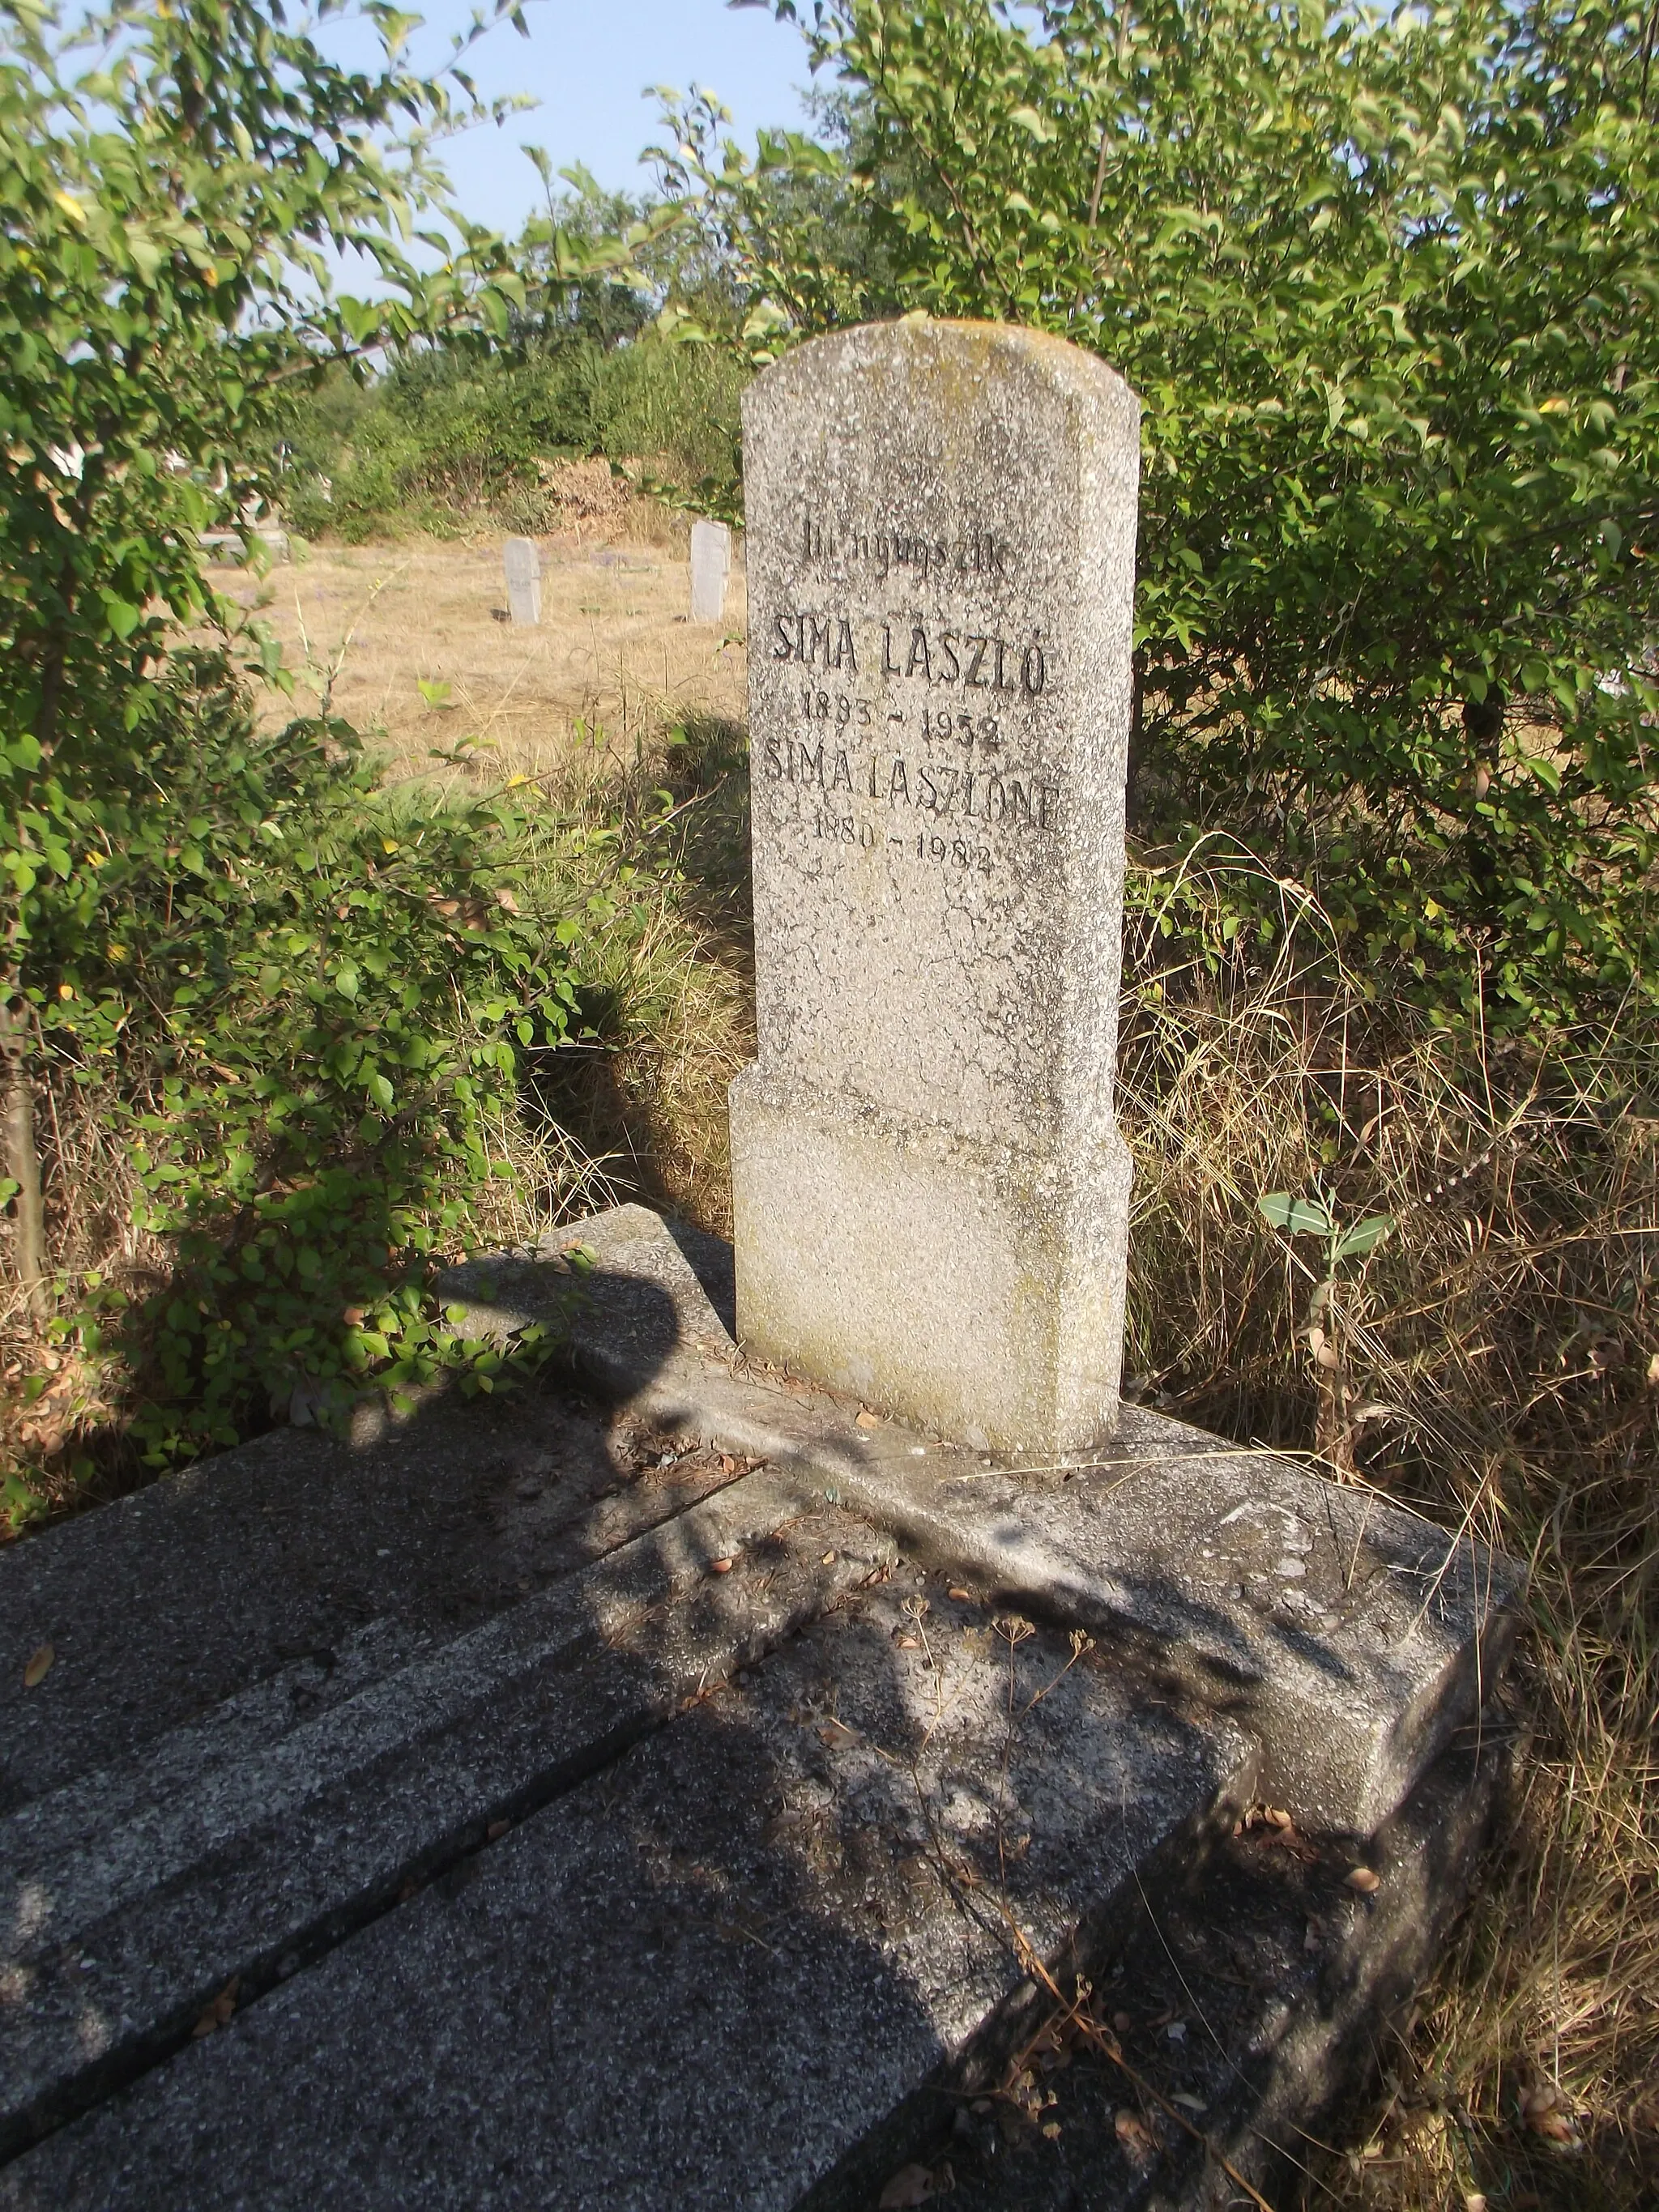 Photo showing: Sima László tomb, Hékéd cemetery, Szentes town